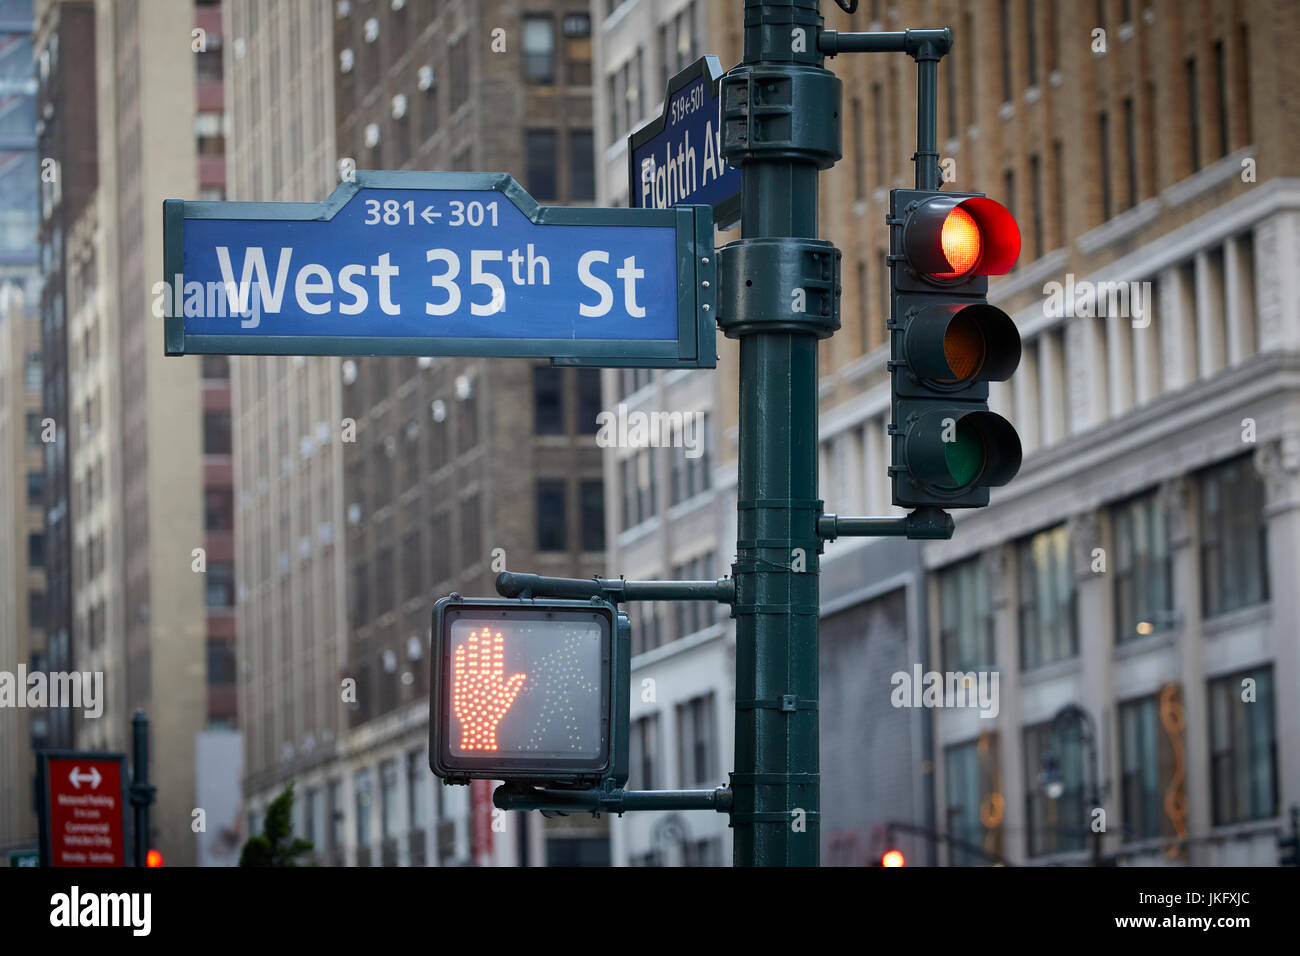 La Ciudad de Nueva York, Manhattan, West 35th Street nombre Sign on 8th Avenue Foto de stock